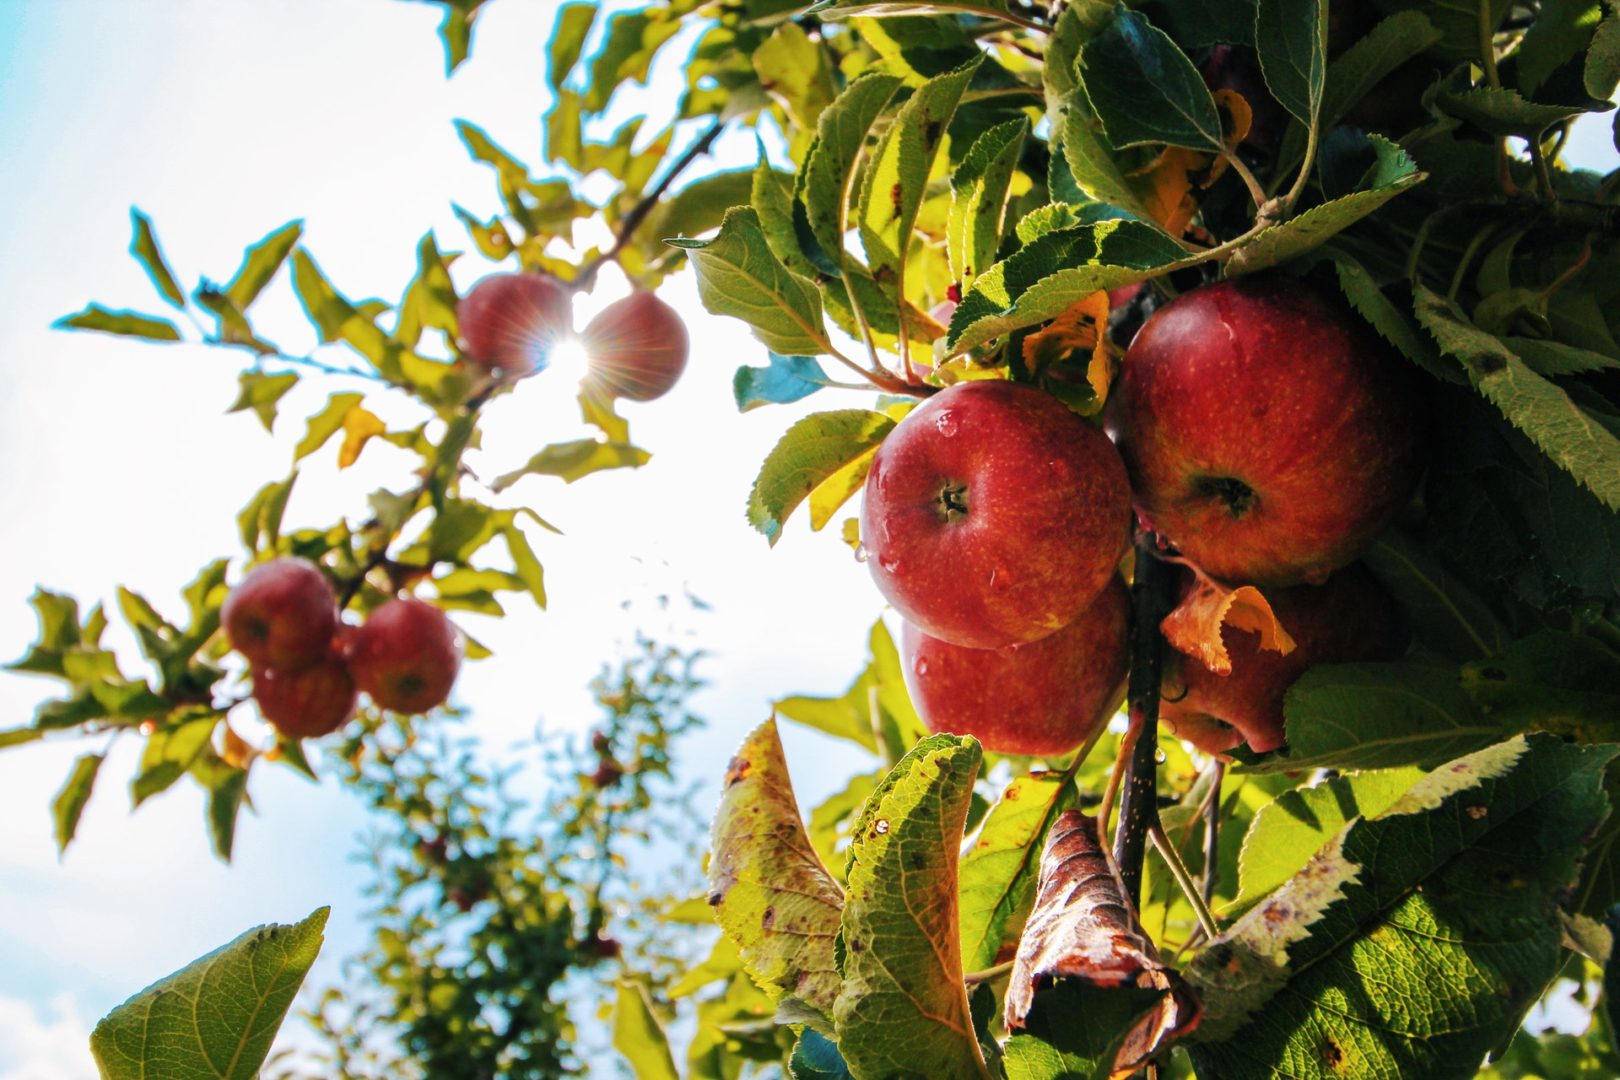 Cresce a expectativa para uma boa colheita da maçã em 2021. Foto/Reprodução: Tom Swinnen no Pexels